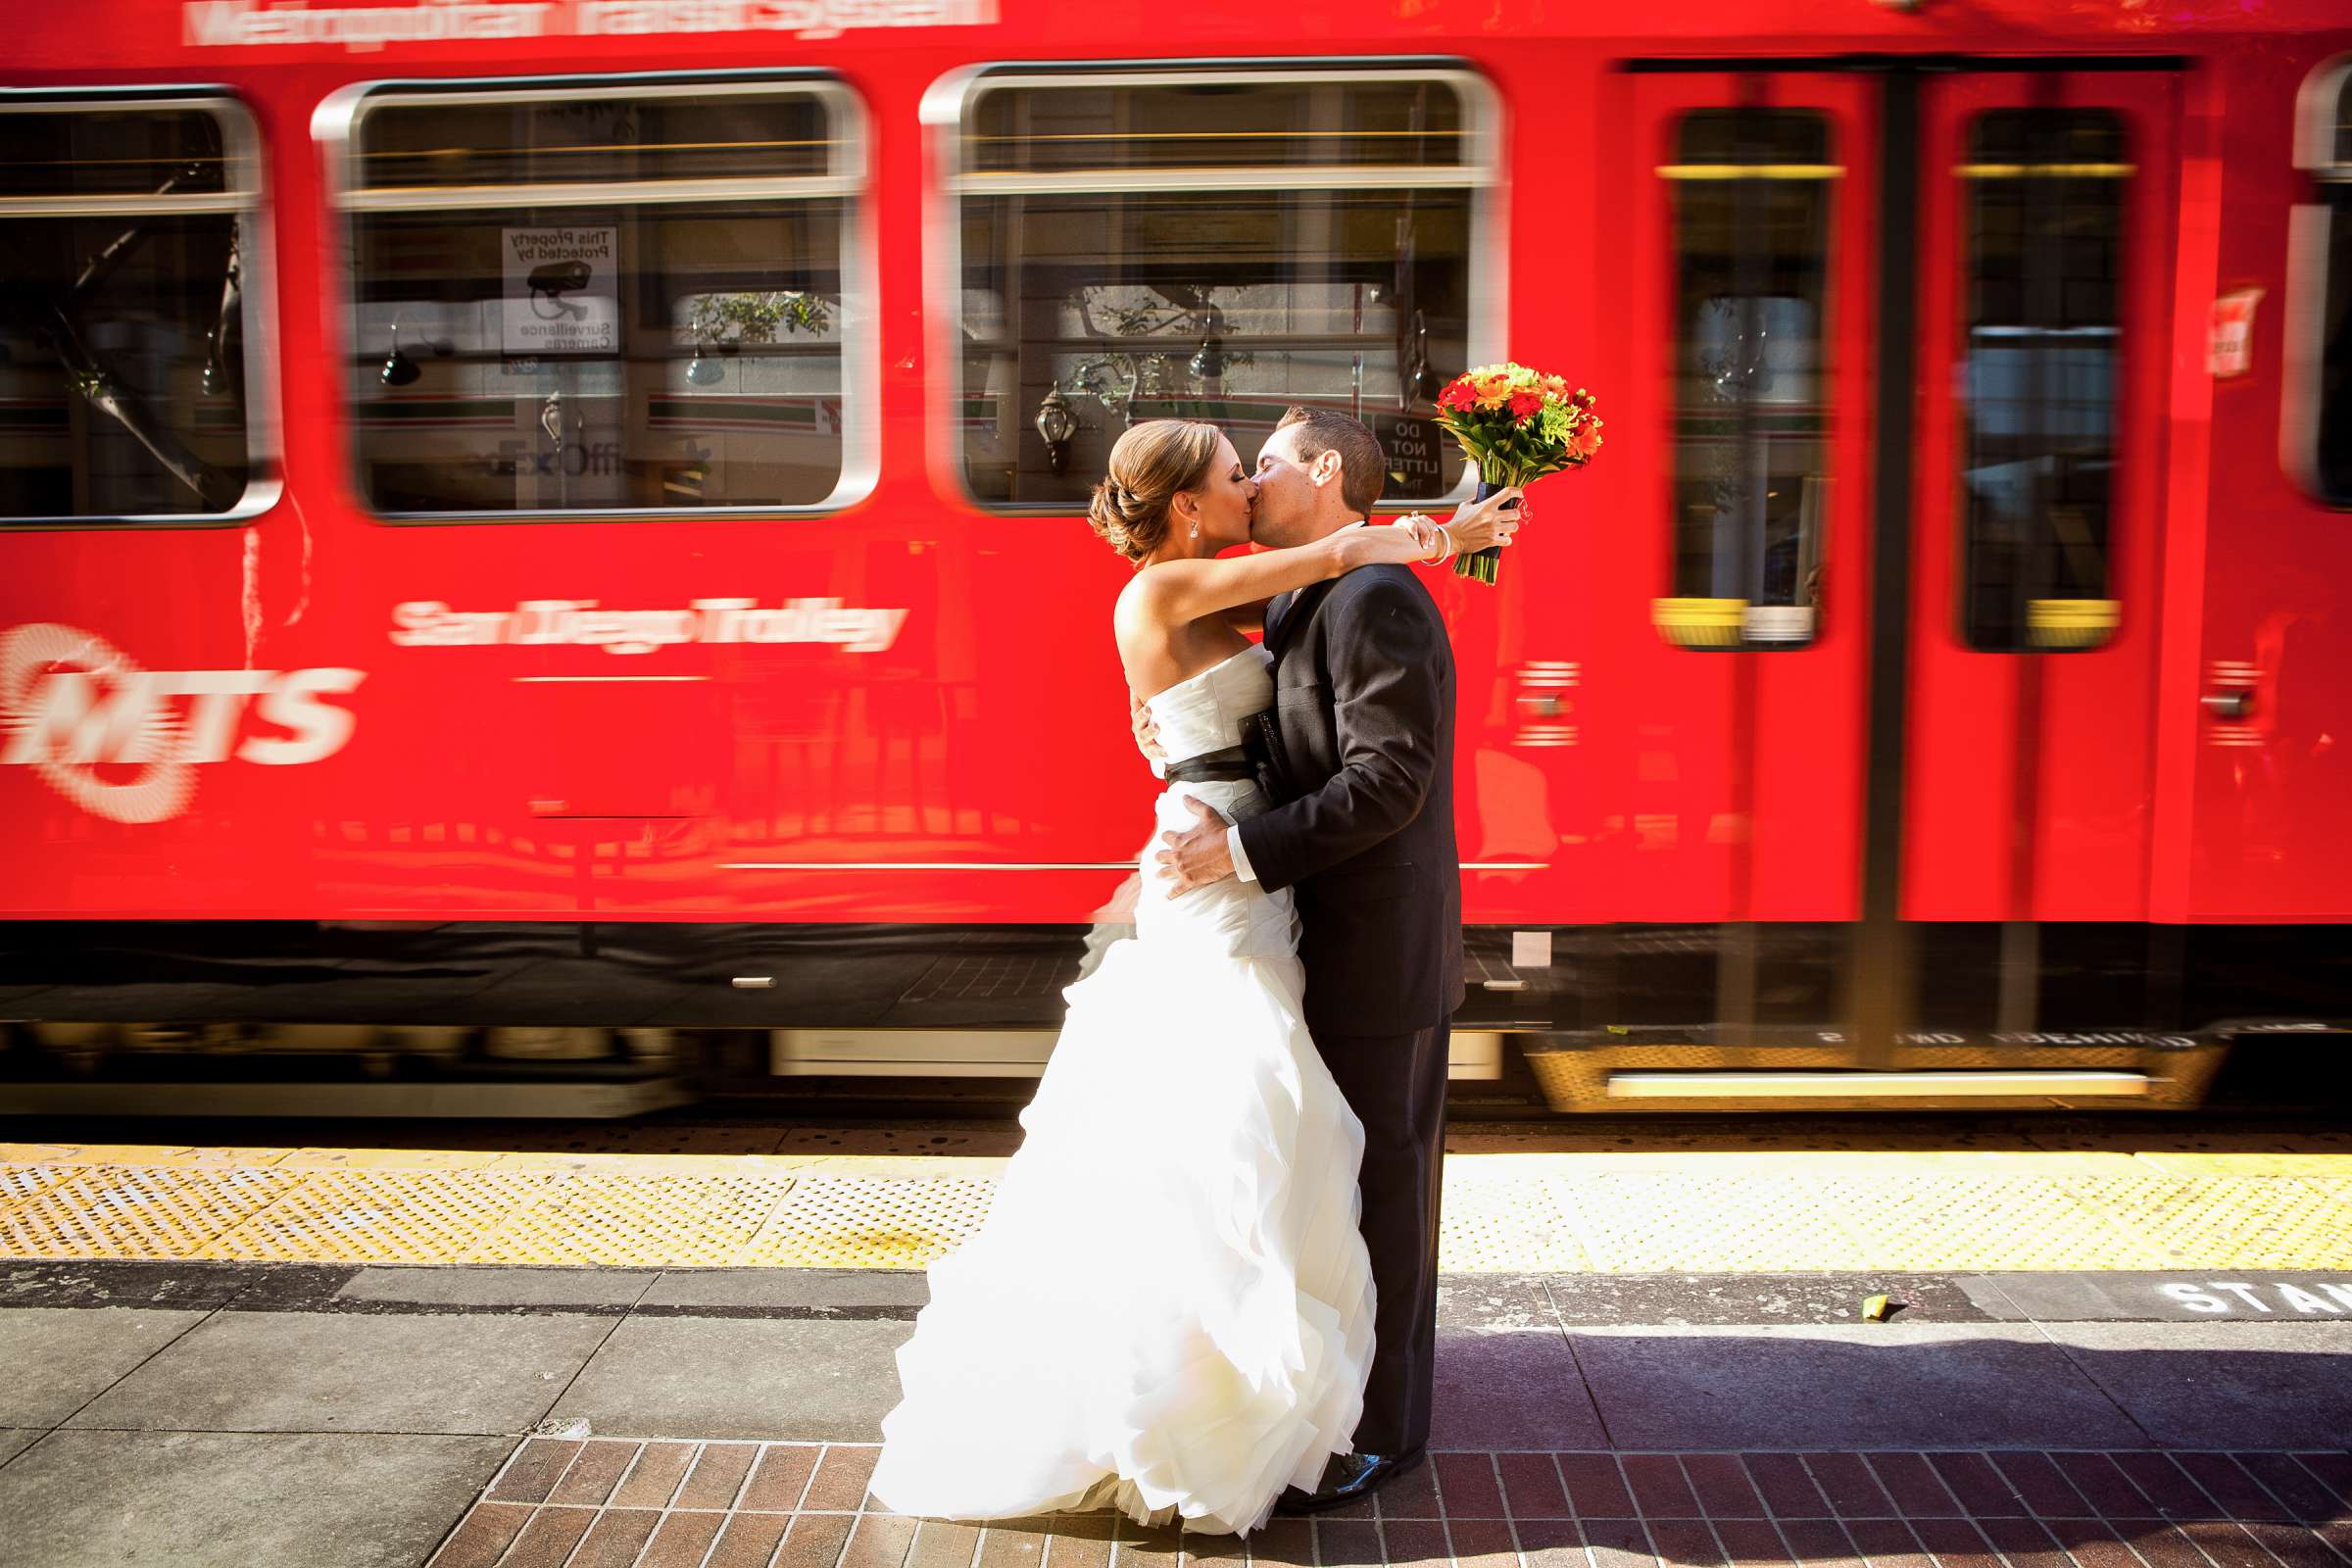 Hotel Palomar San Diego Wedding, Liz and Jeff Wedding Photo #205375 by True Photography